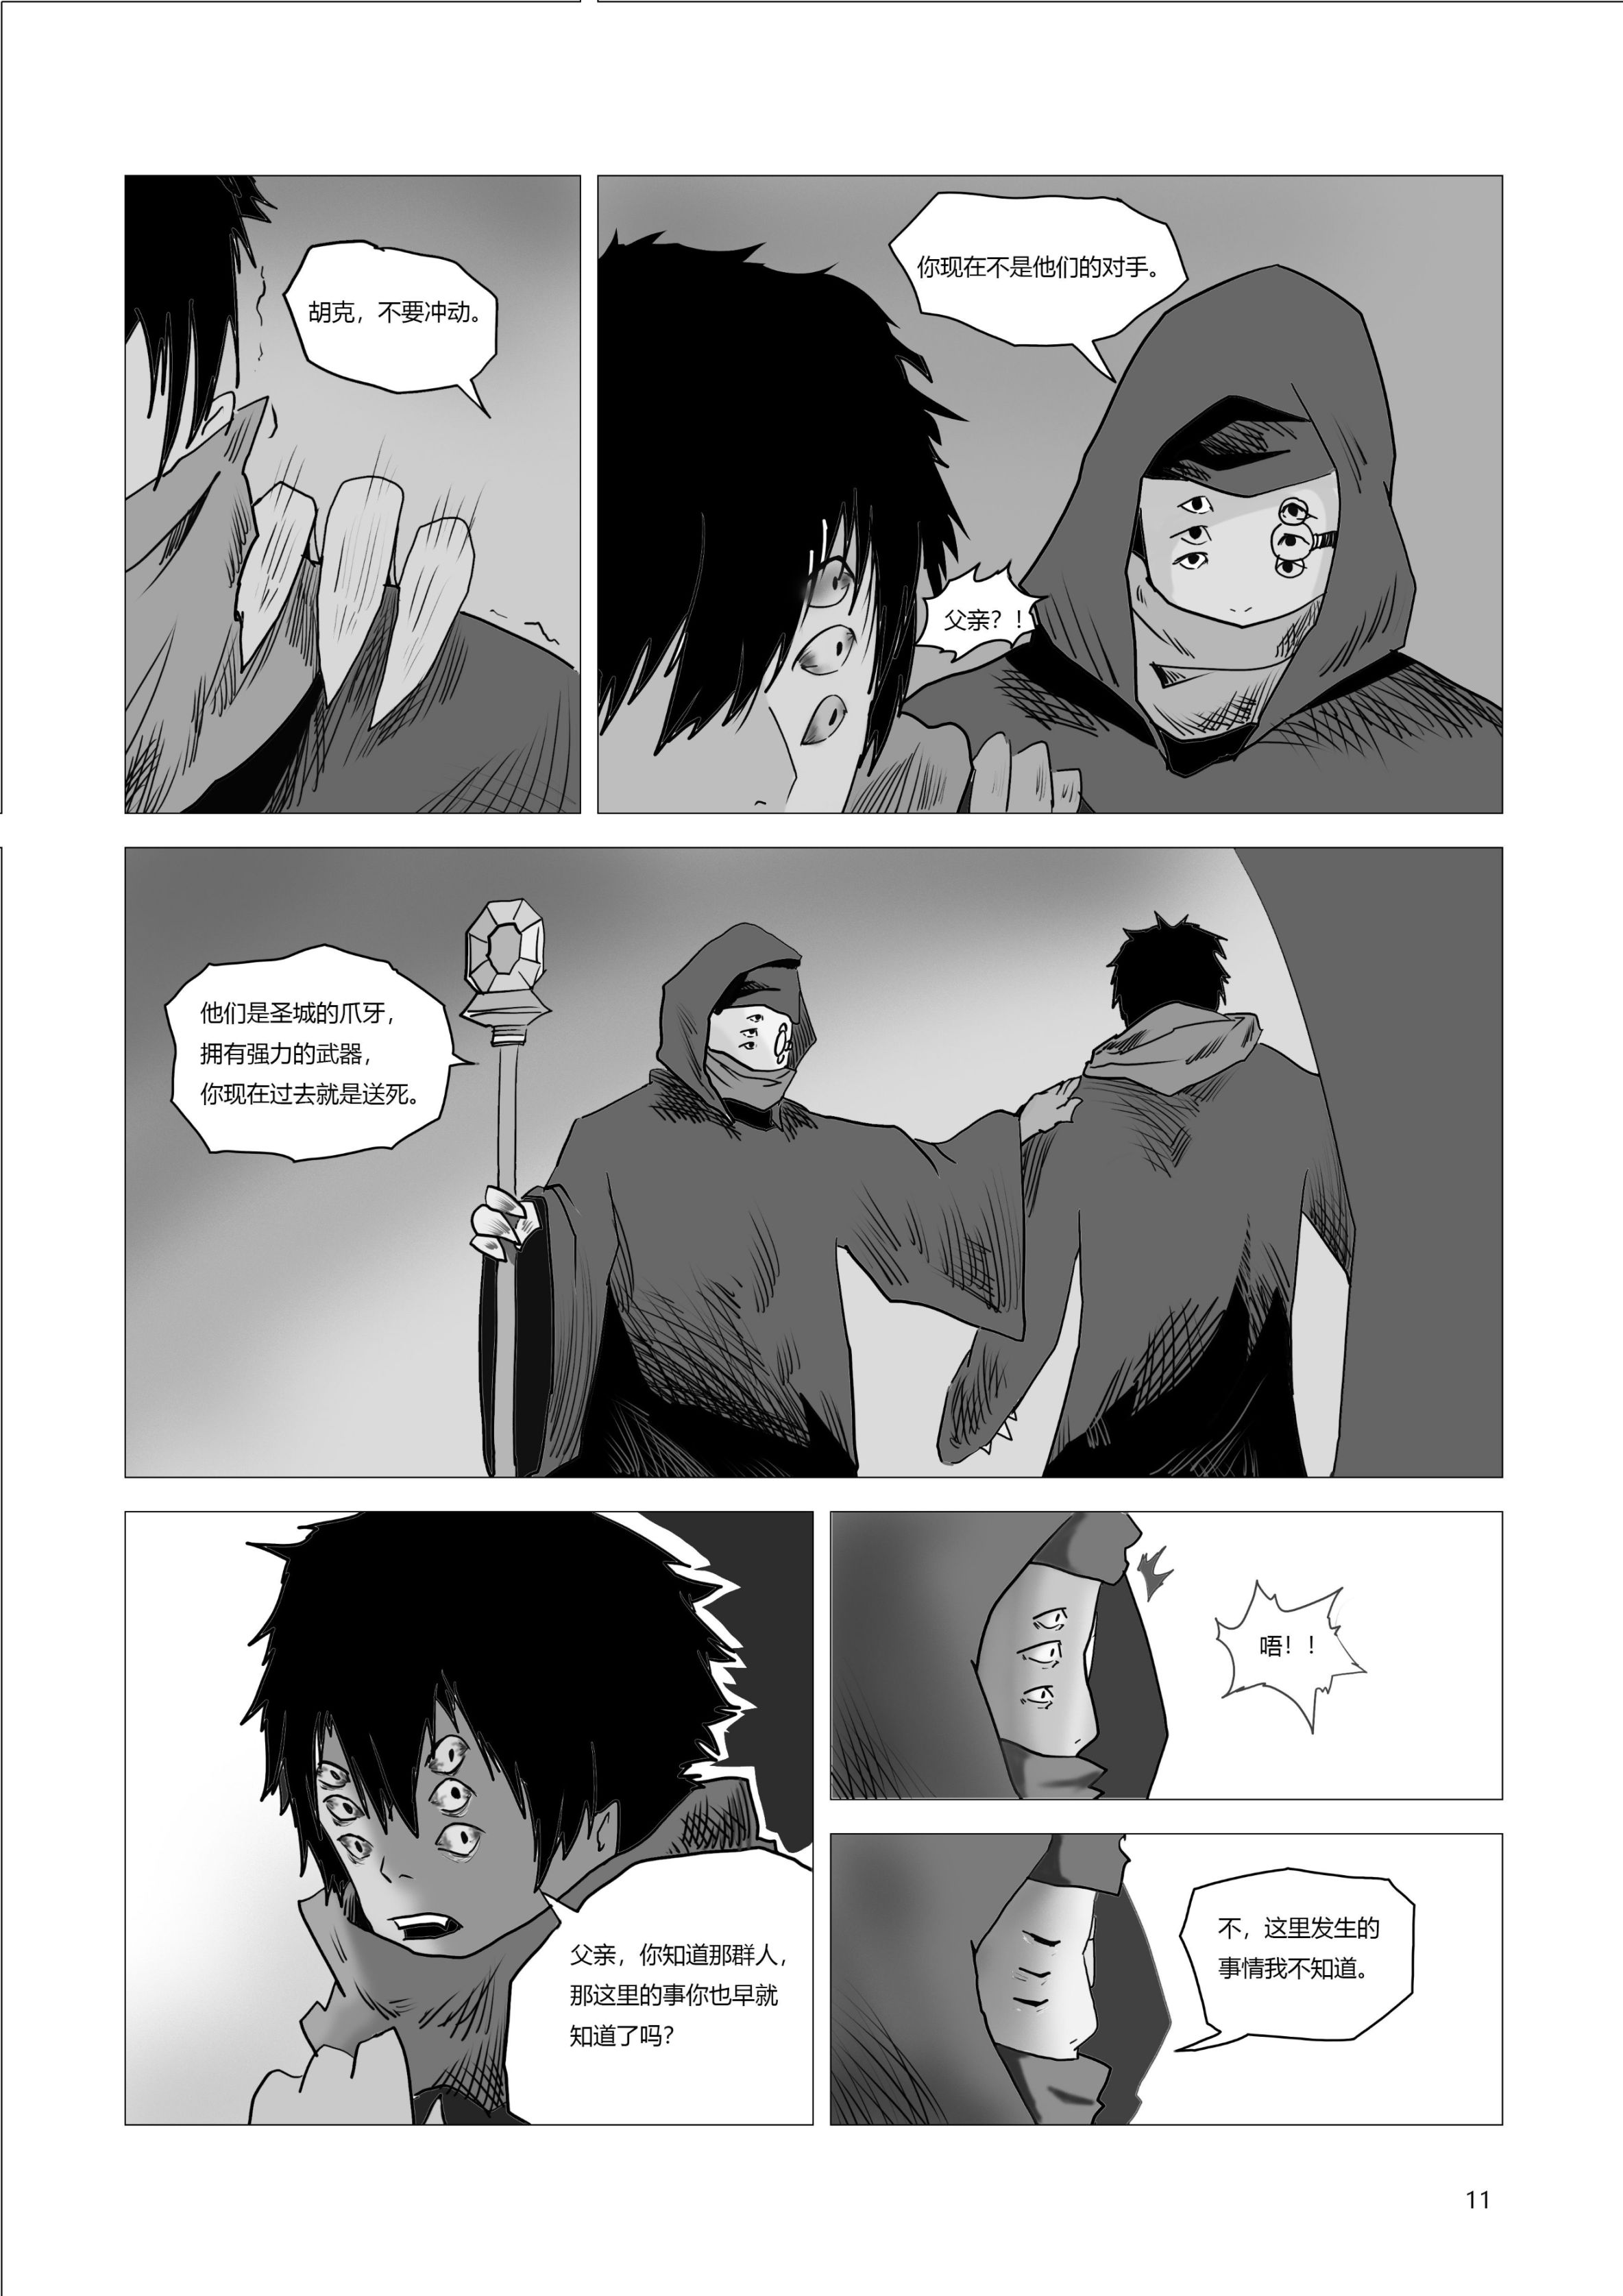 【命运2】原创同人漫画《碎裂炎阳胡克》第二话-第4张